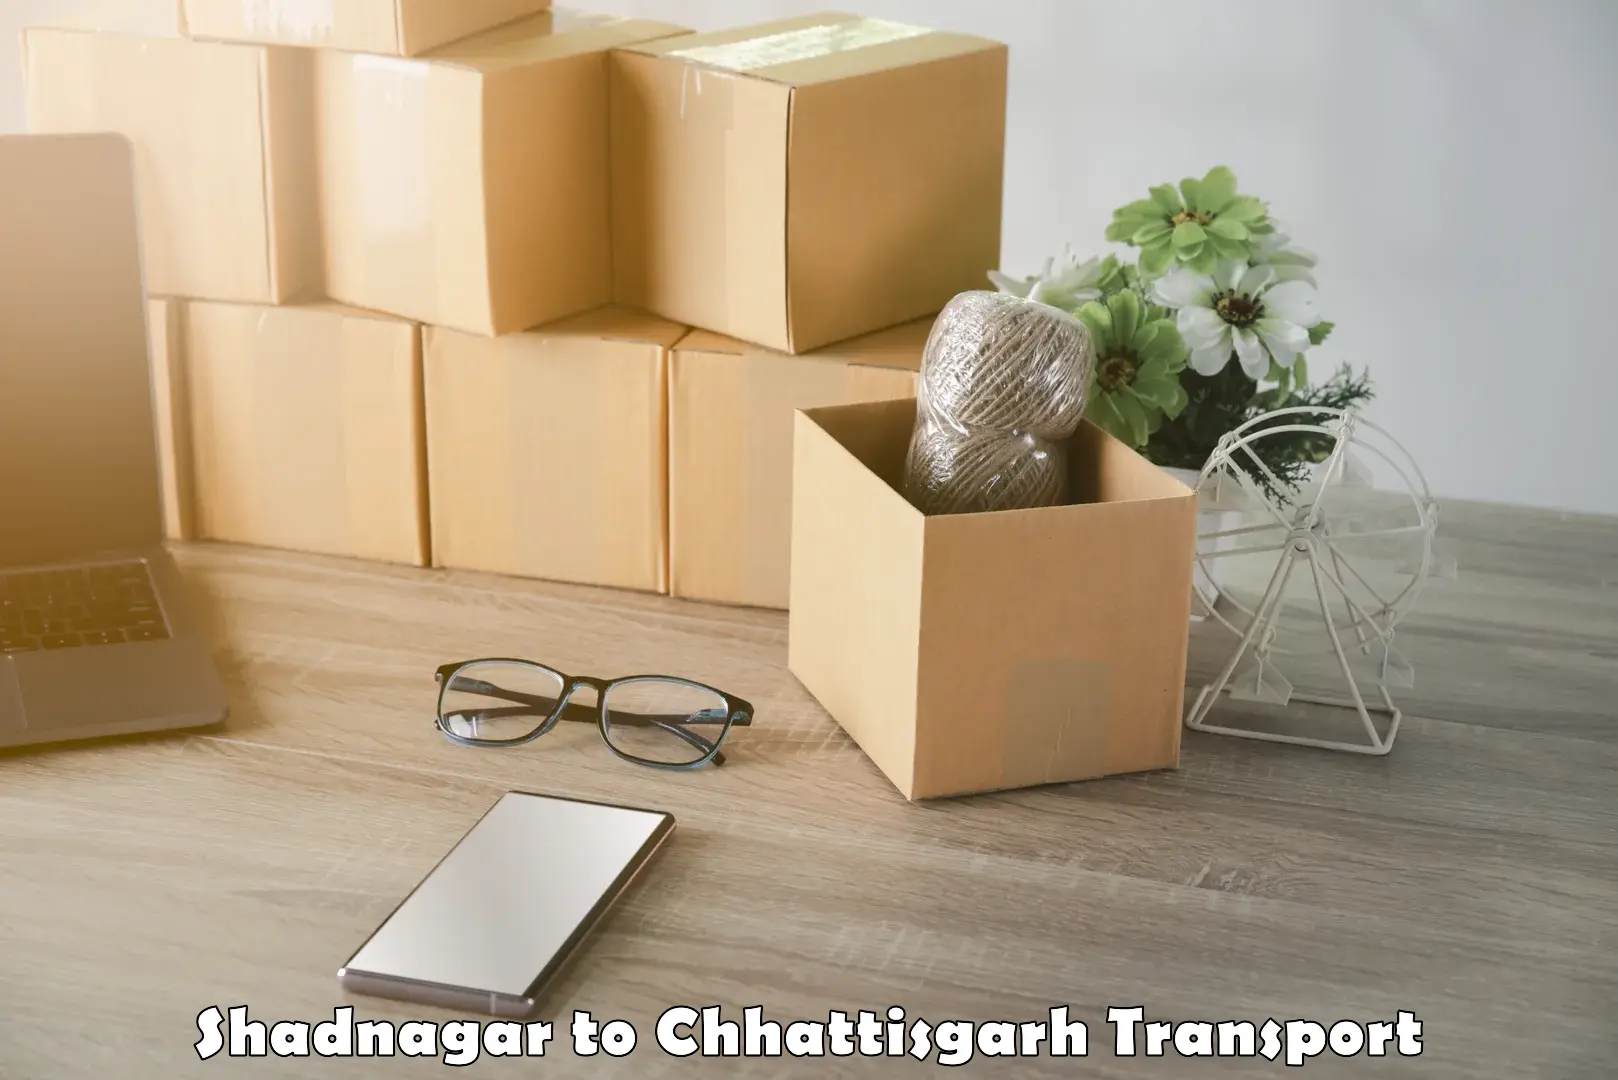 Part load transport service in India Shadnagar to Chhattisgarh